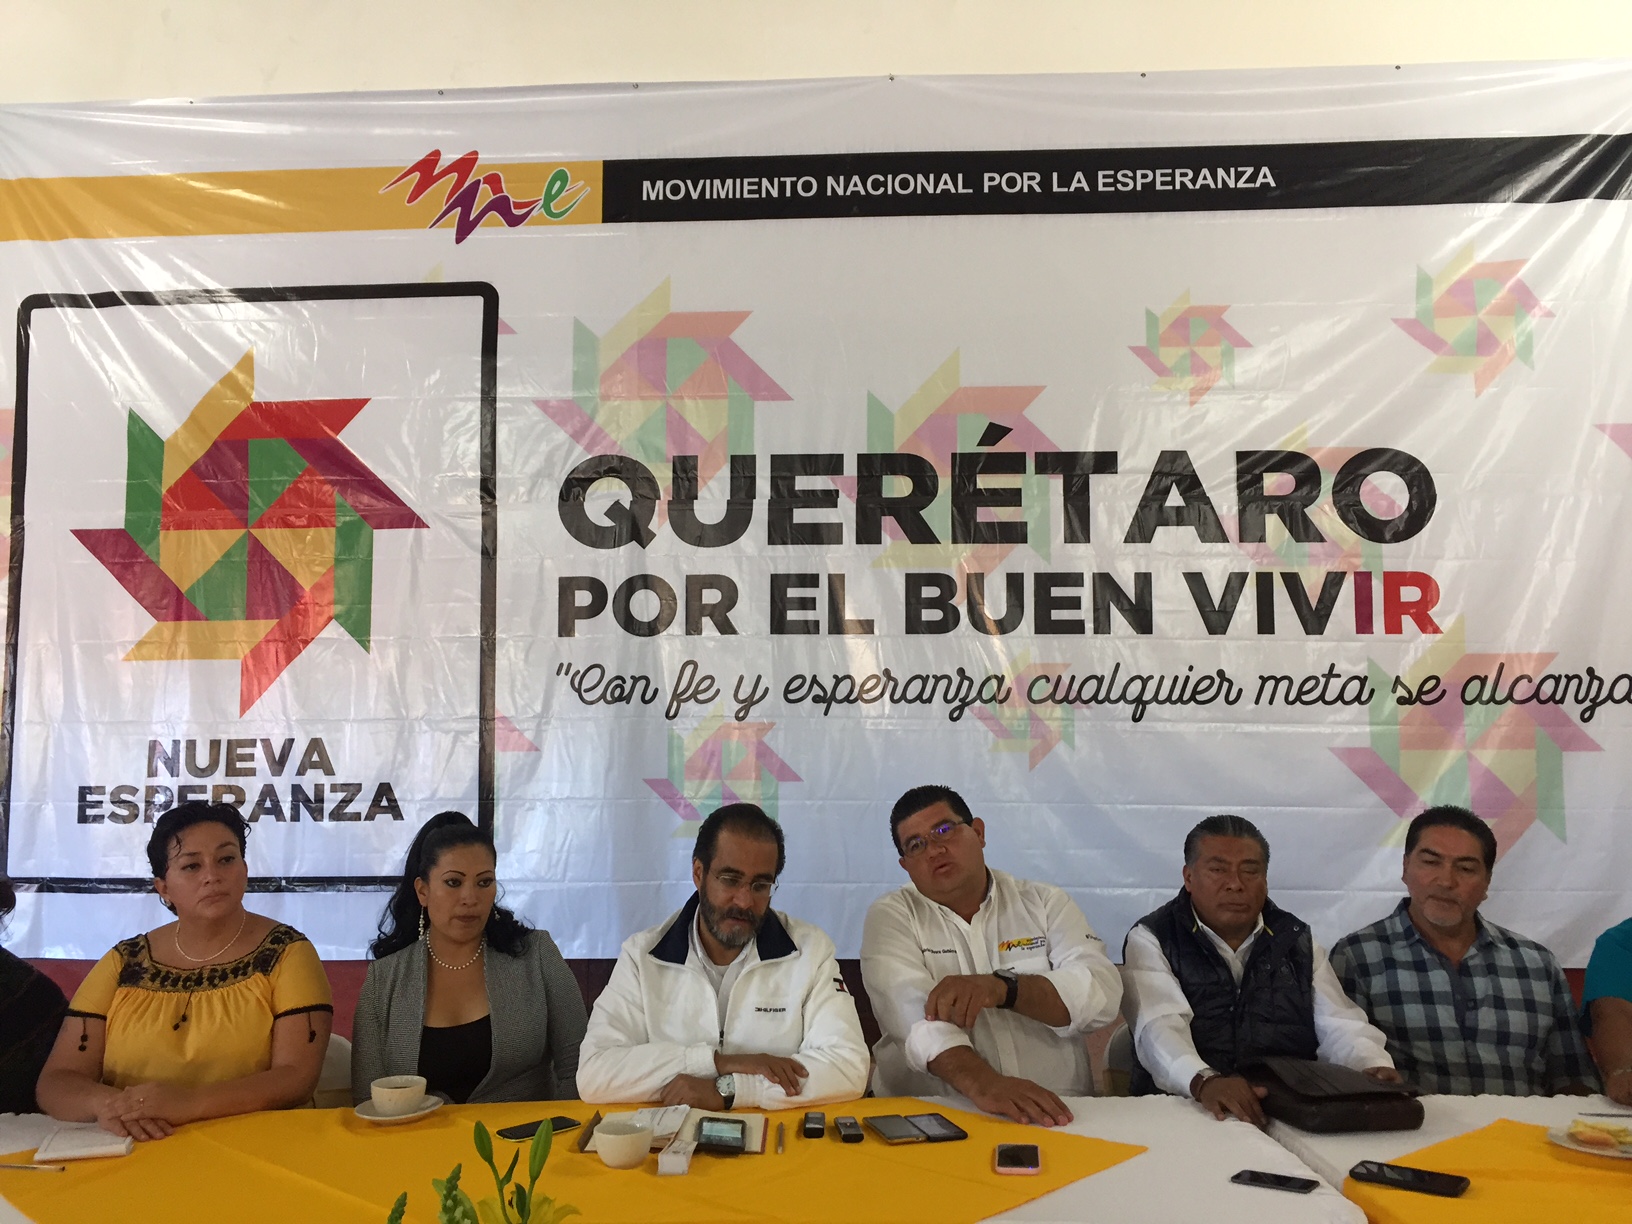  “Izquierda enfrenta reto de unidad para 2018”: Bejarano